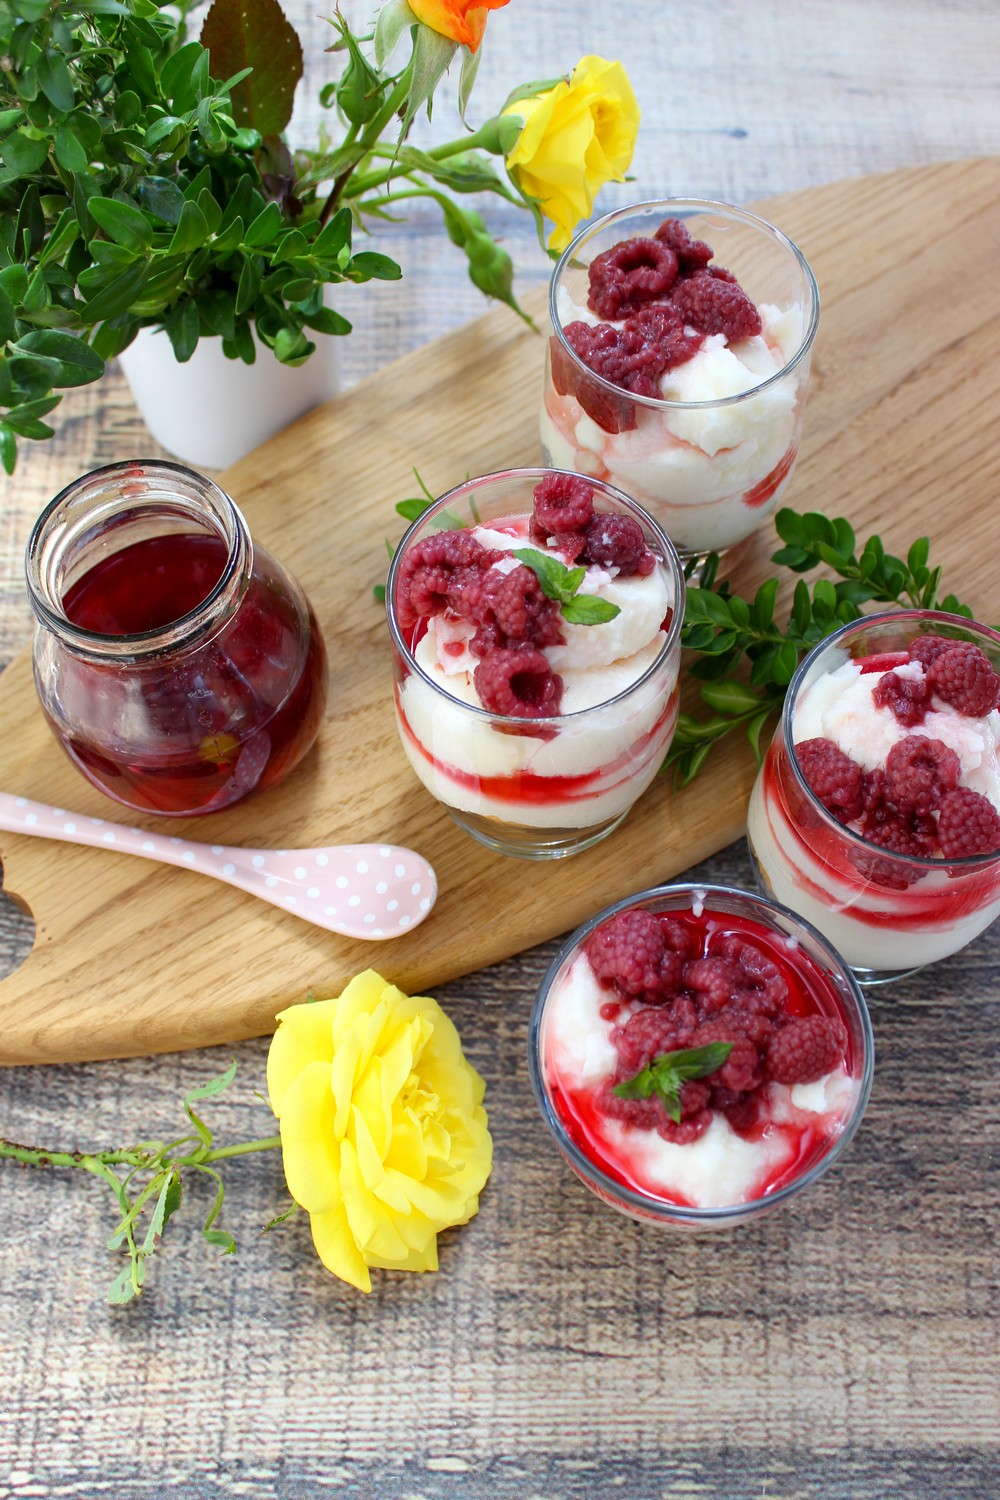 Letni deser – serniczki na zimno z malinami | Słodkie okruszki